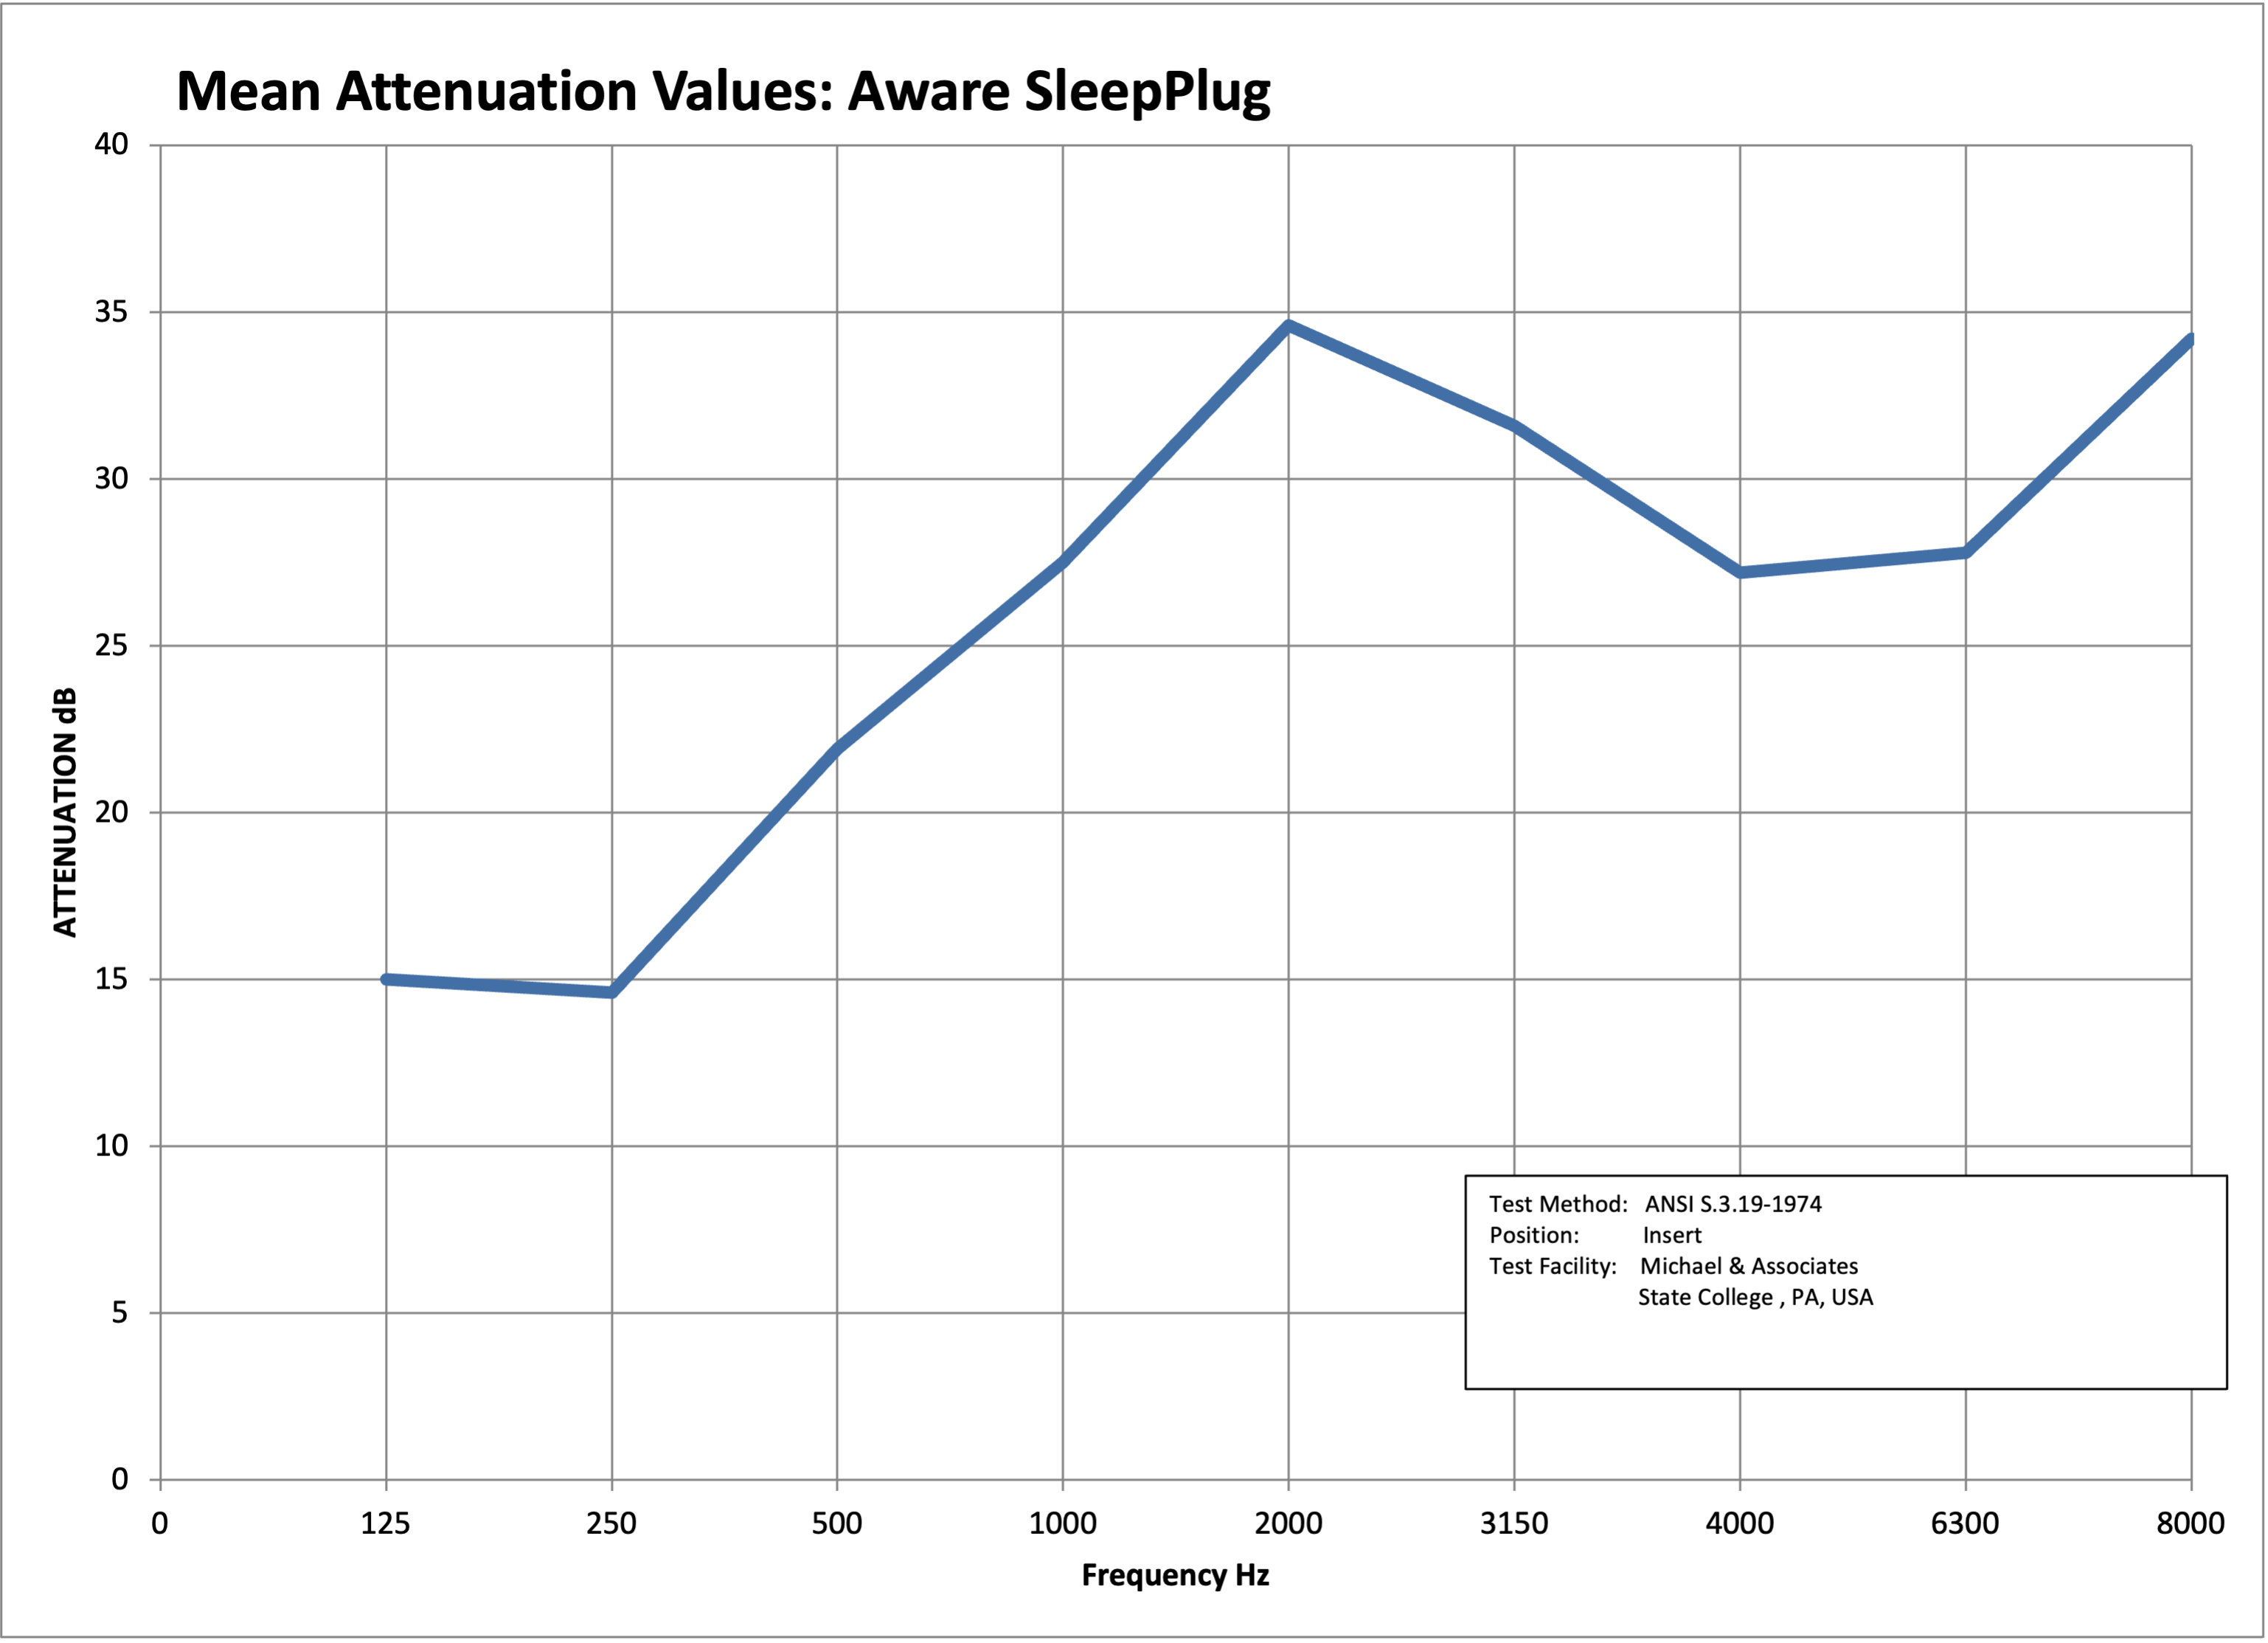 Aware SleepPlug